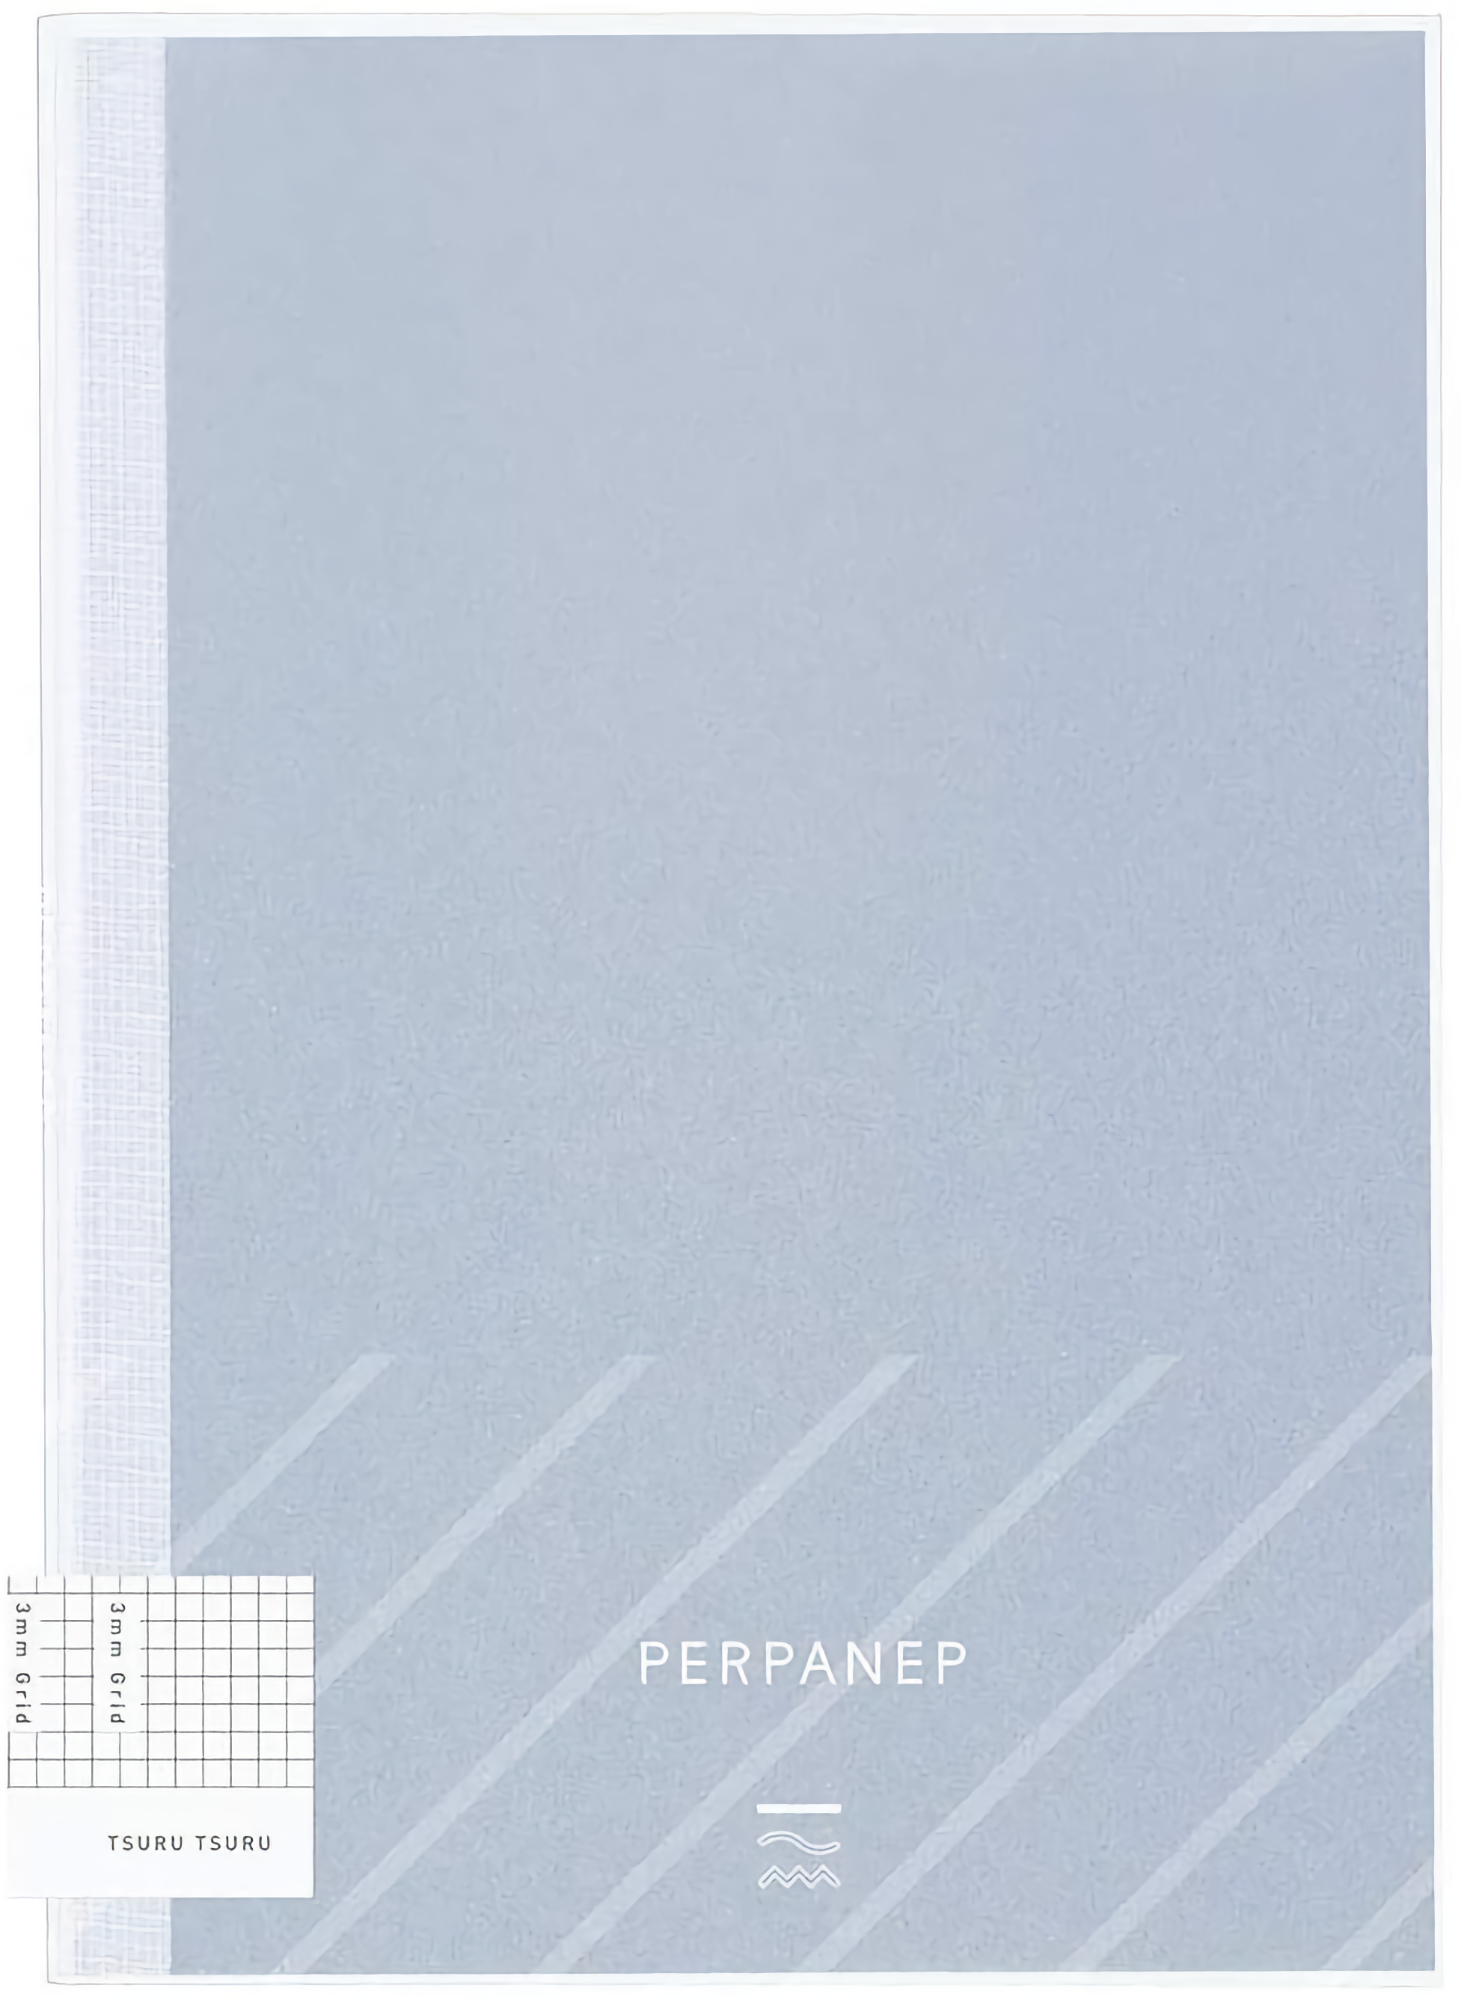 Kokuyo PERPANEP Notebook - Tsuru Tsuru A5 3 mm Grid